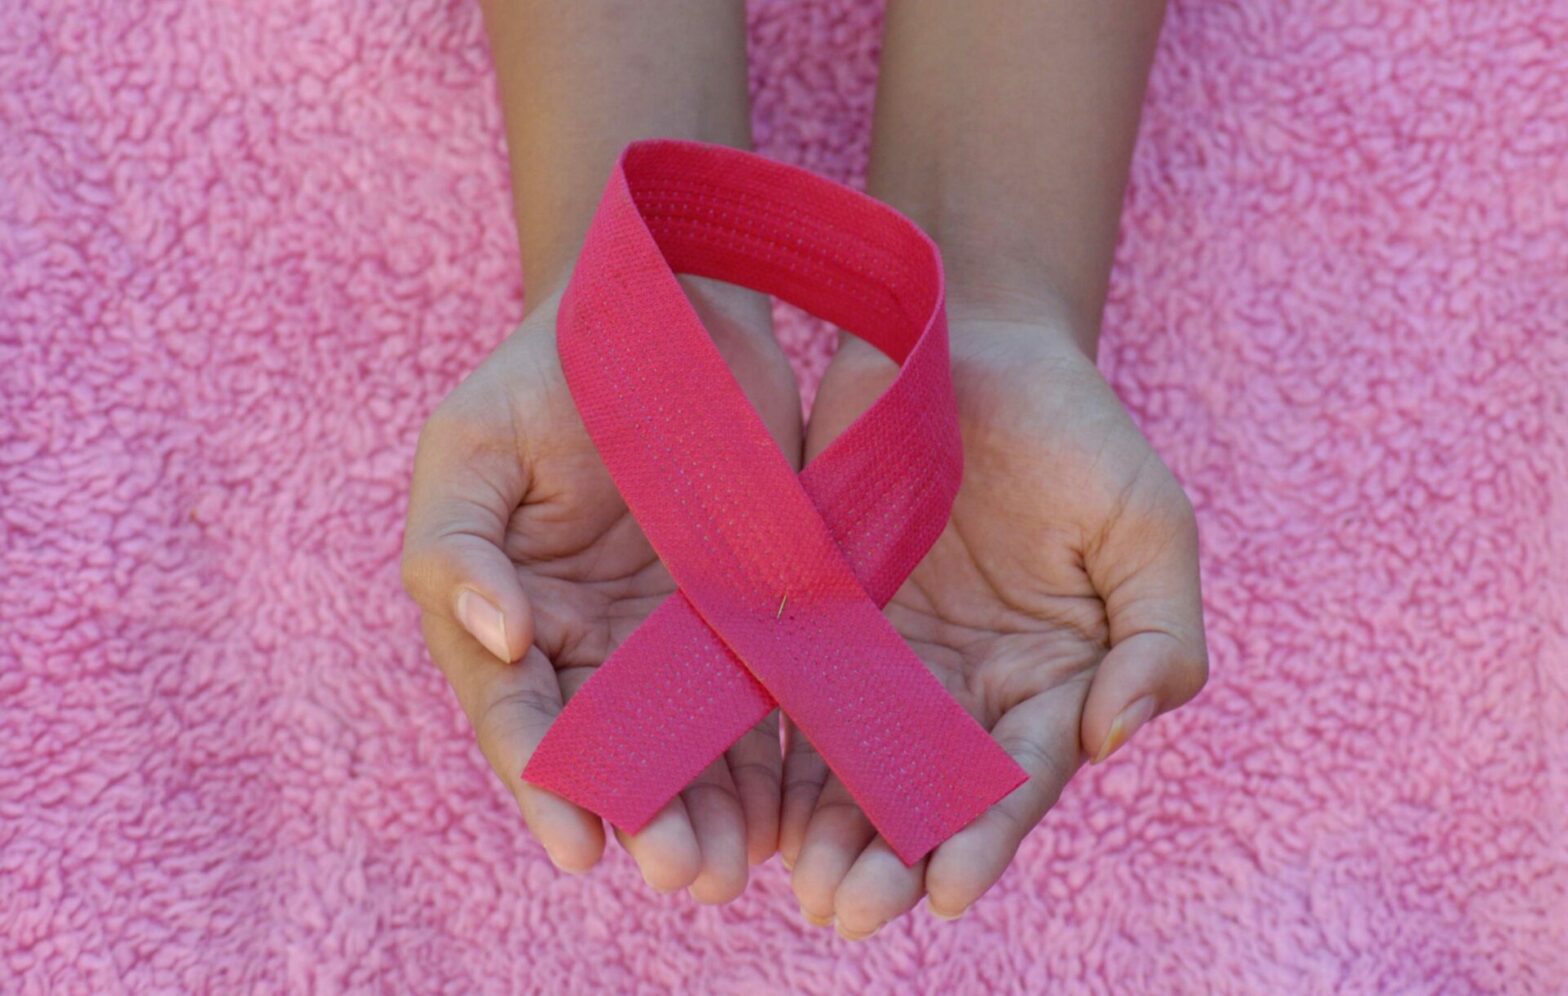 Rosa Schleife - pink ribbon - als Symbol im Bewusstsein gegen Brustkrebs.